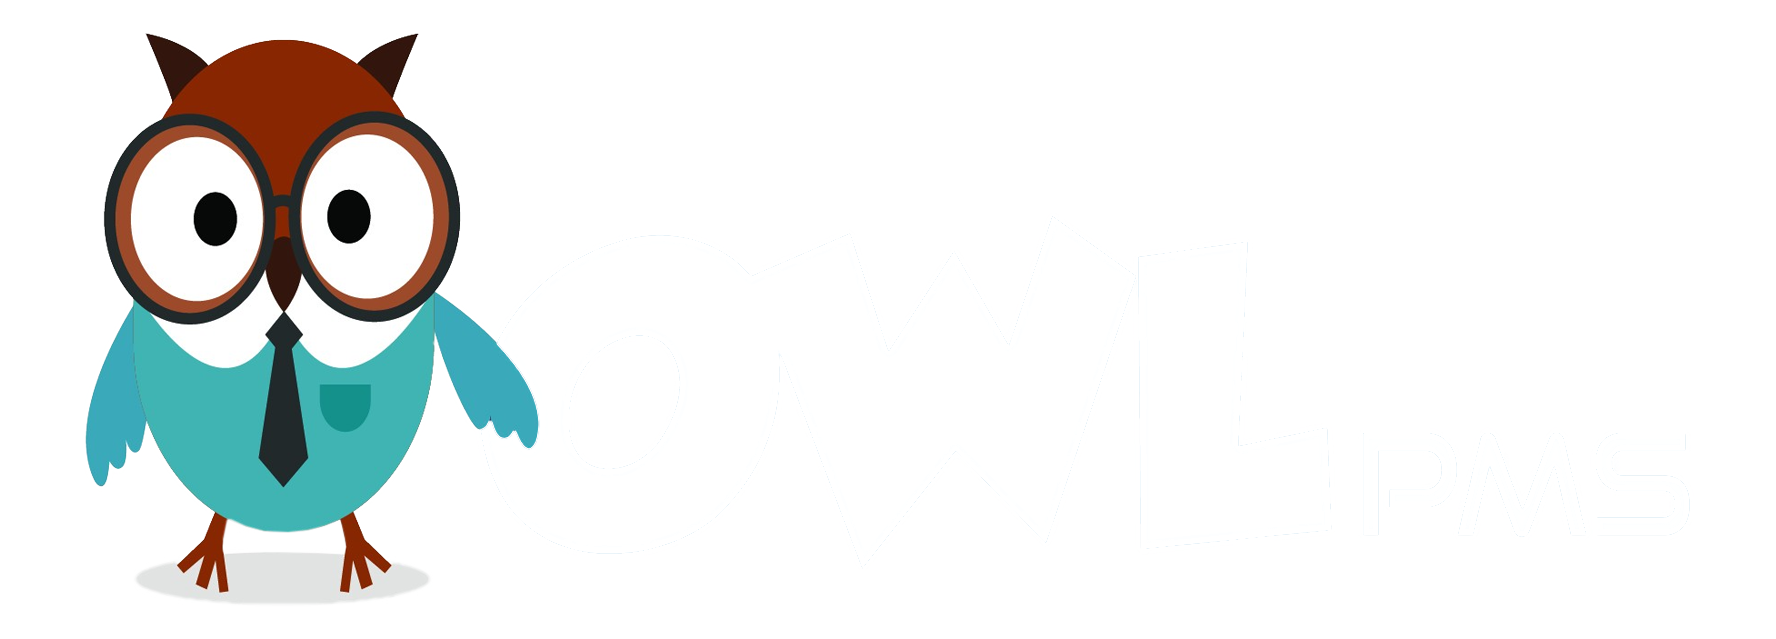 Owlpms